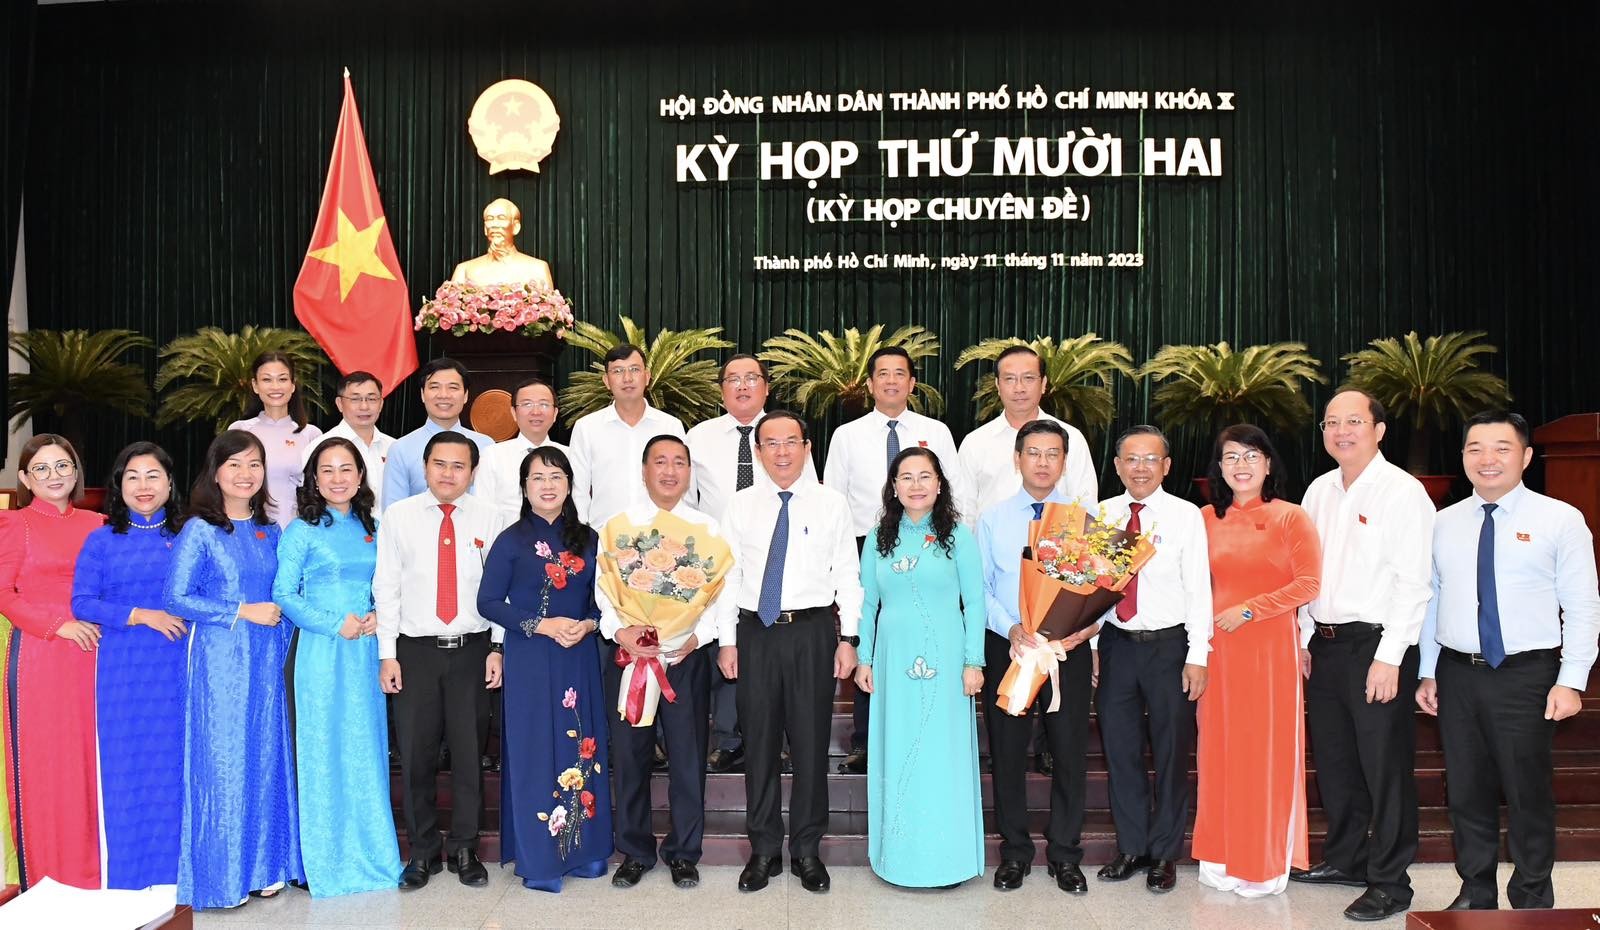 Các đồng chí lãnh đạo TP. Hồ Chí Minh cùng đại biểu HĐND TP. Hồ Chí Minh tại kỳ họp (Ảnh: Việt Dũng).